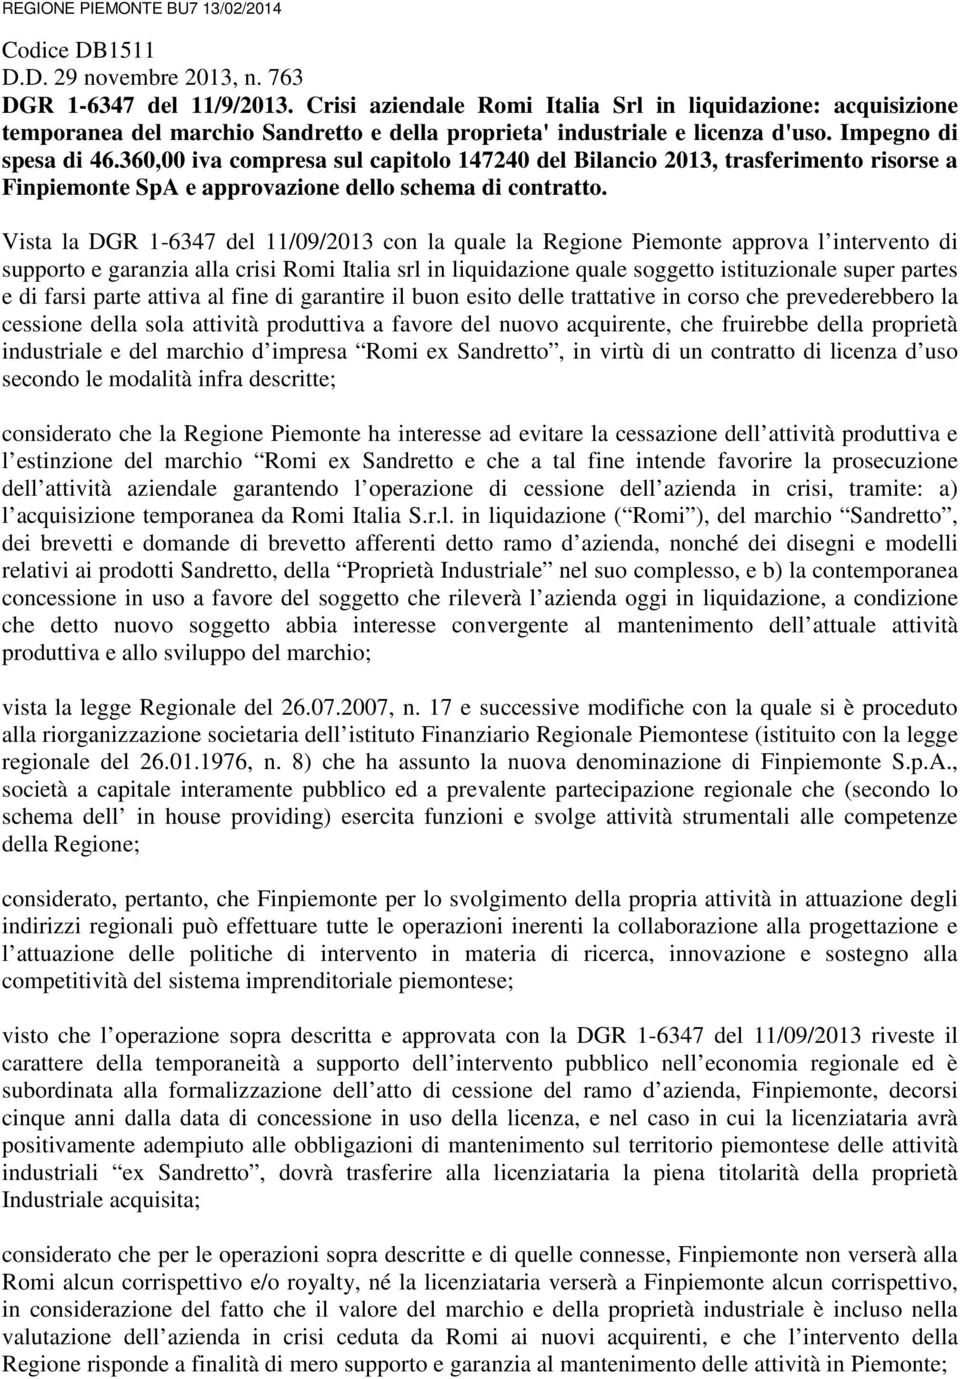 360,00 iva compresa sul capitolo 147240 del Bilancio 2013, trasferimento risorse a Finpiemonte SpA e approvazione dello schema di contratto.